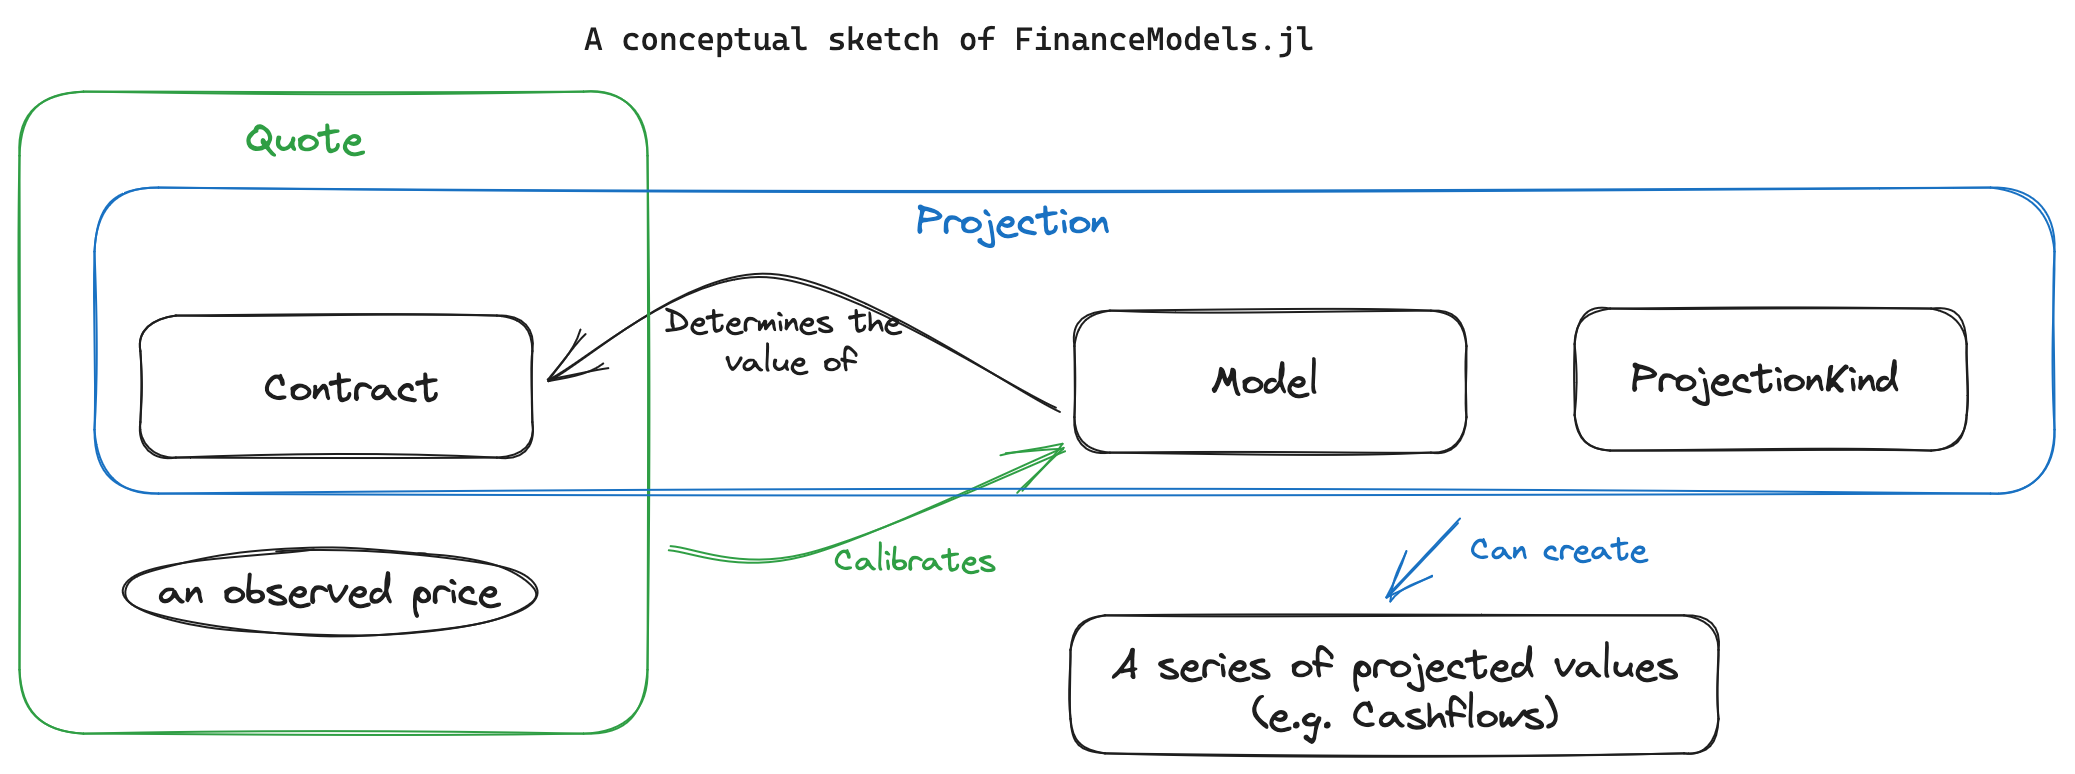 A conceptual sketch of FinanceModels.jl